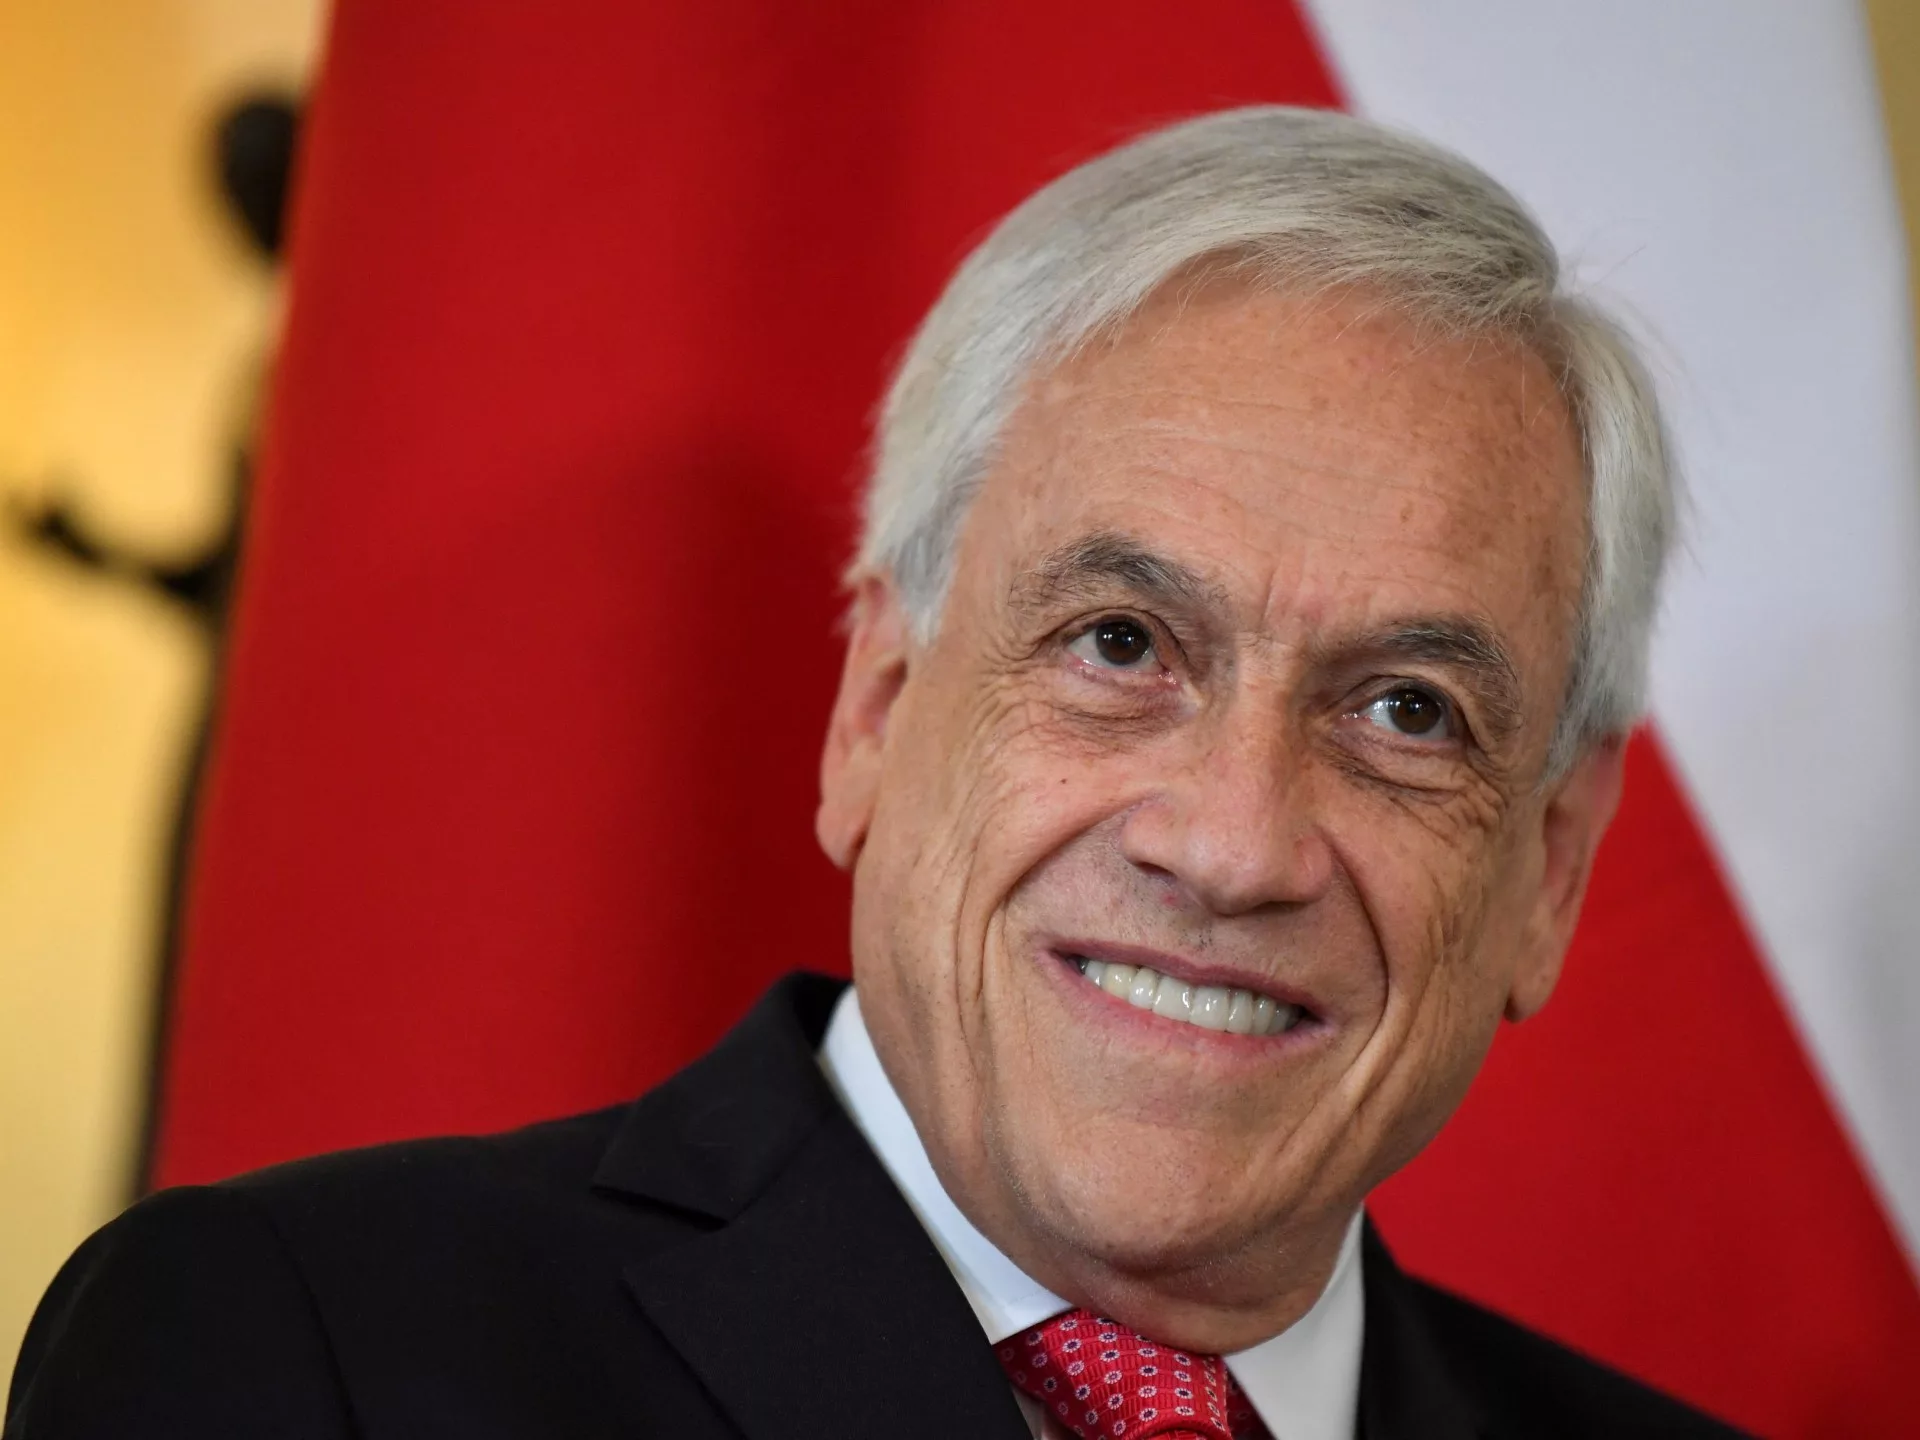 Muere el expresidente de Chile Sebastián Piñera en accidente de helicóptero |  Noticias del obituario